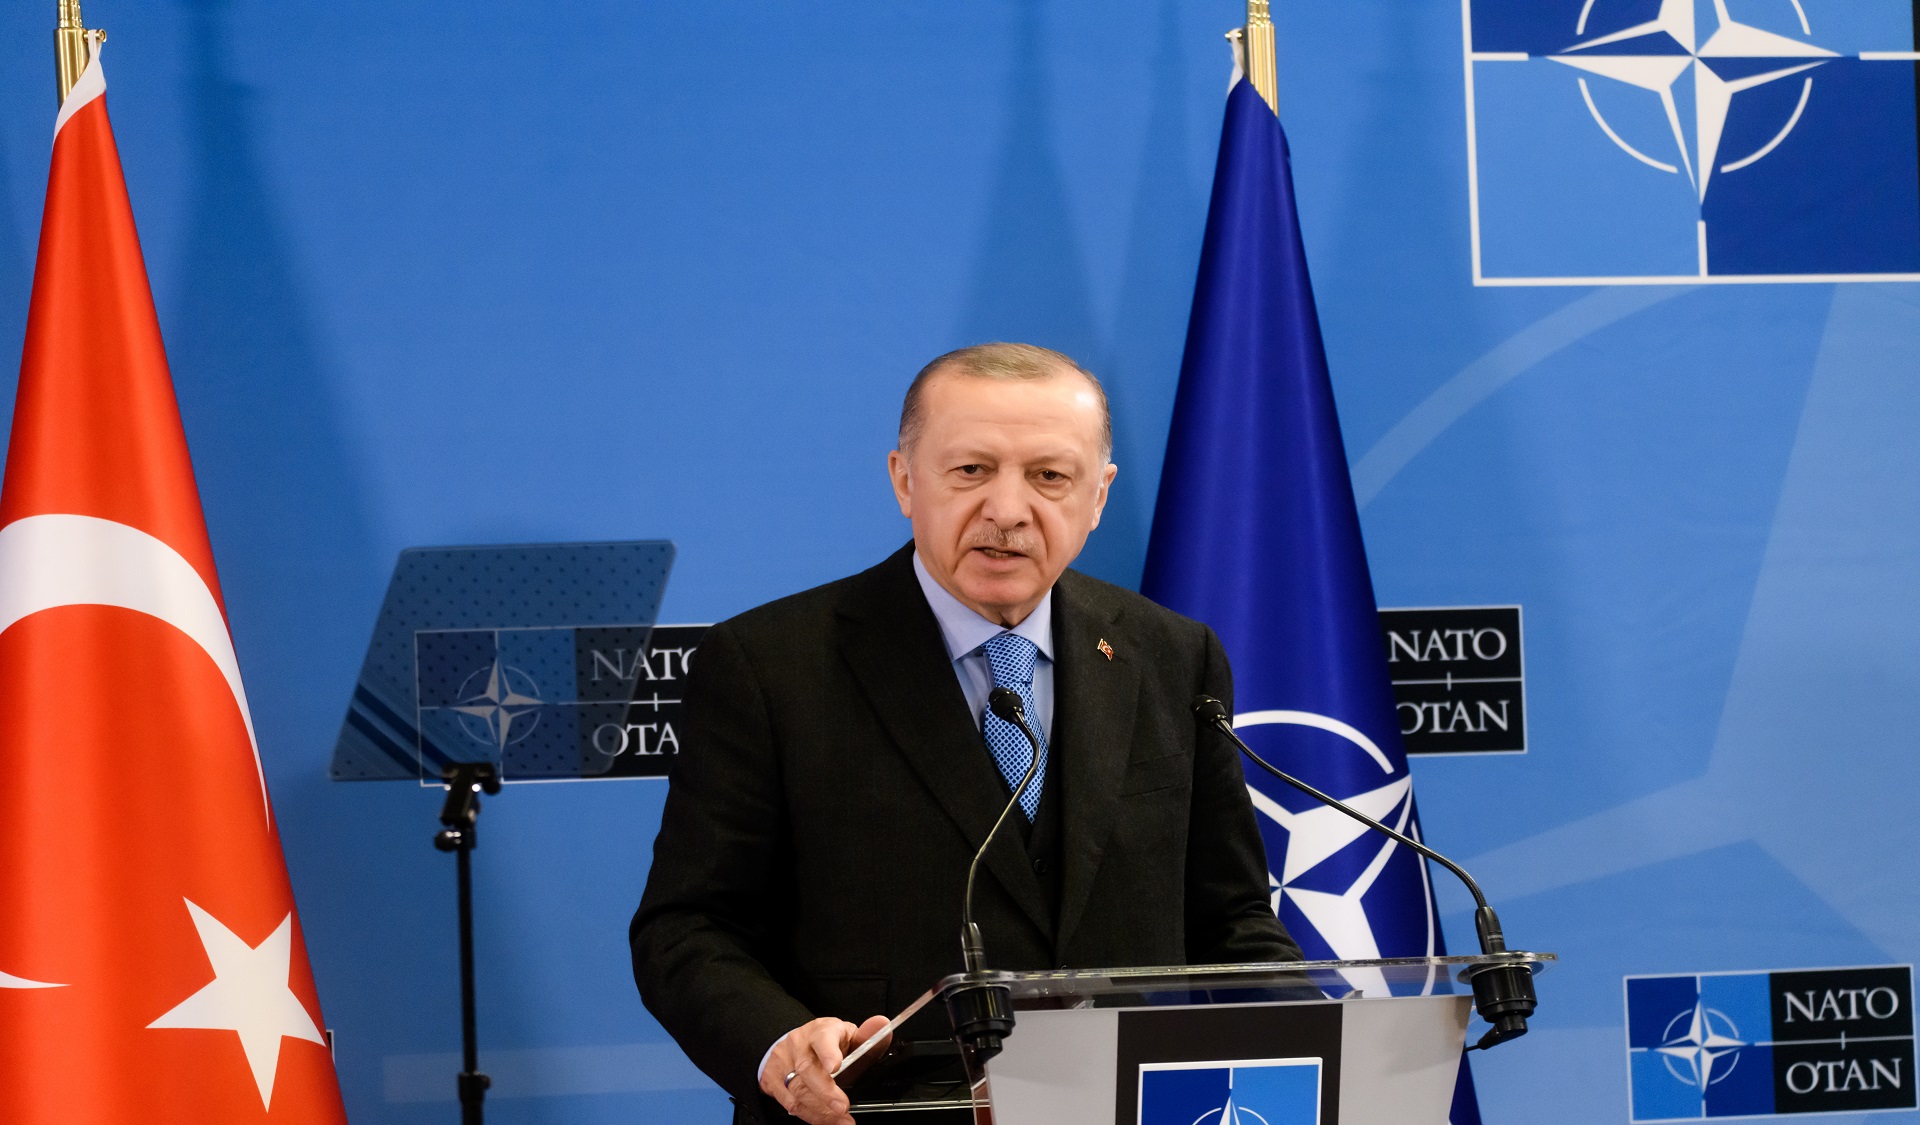 Elargissement de l’OTAN :Comment la Turquie voit-elle son rôle dans un nouvel ordre mondial ?